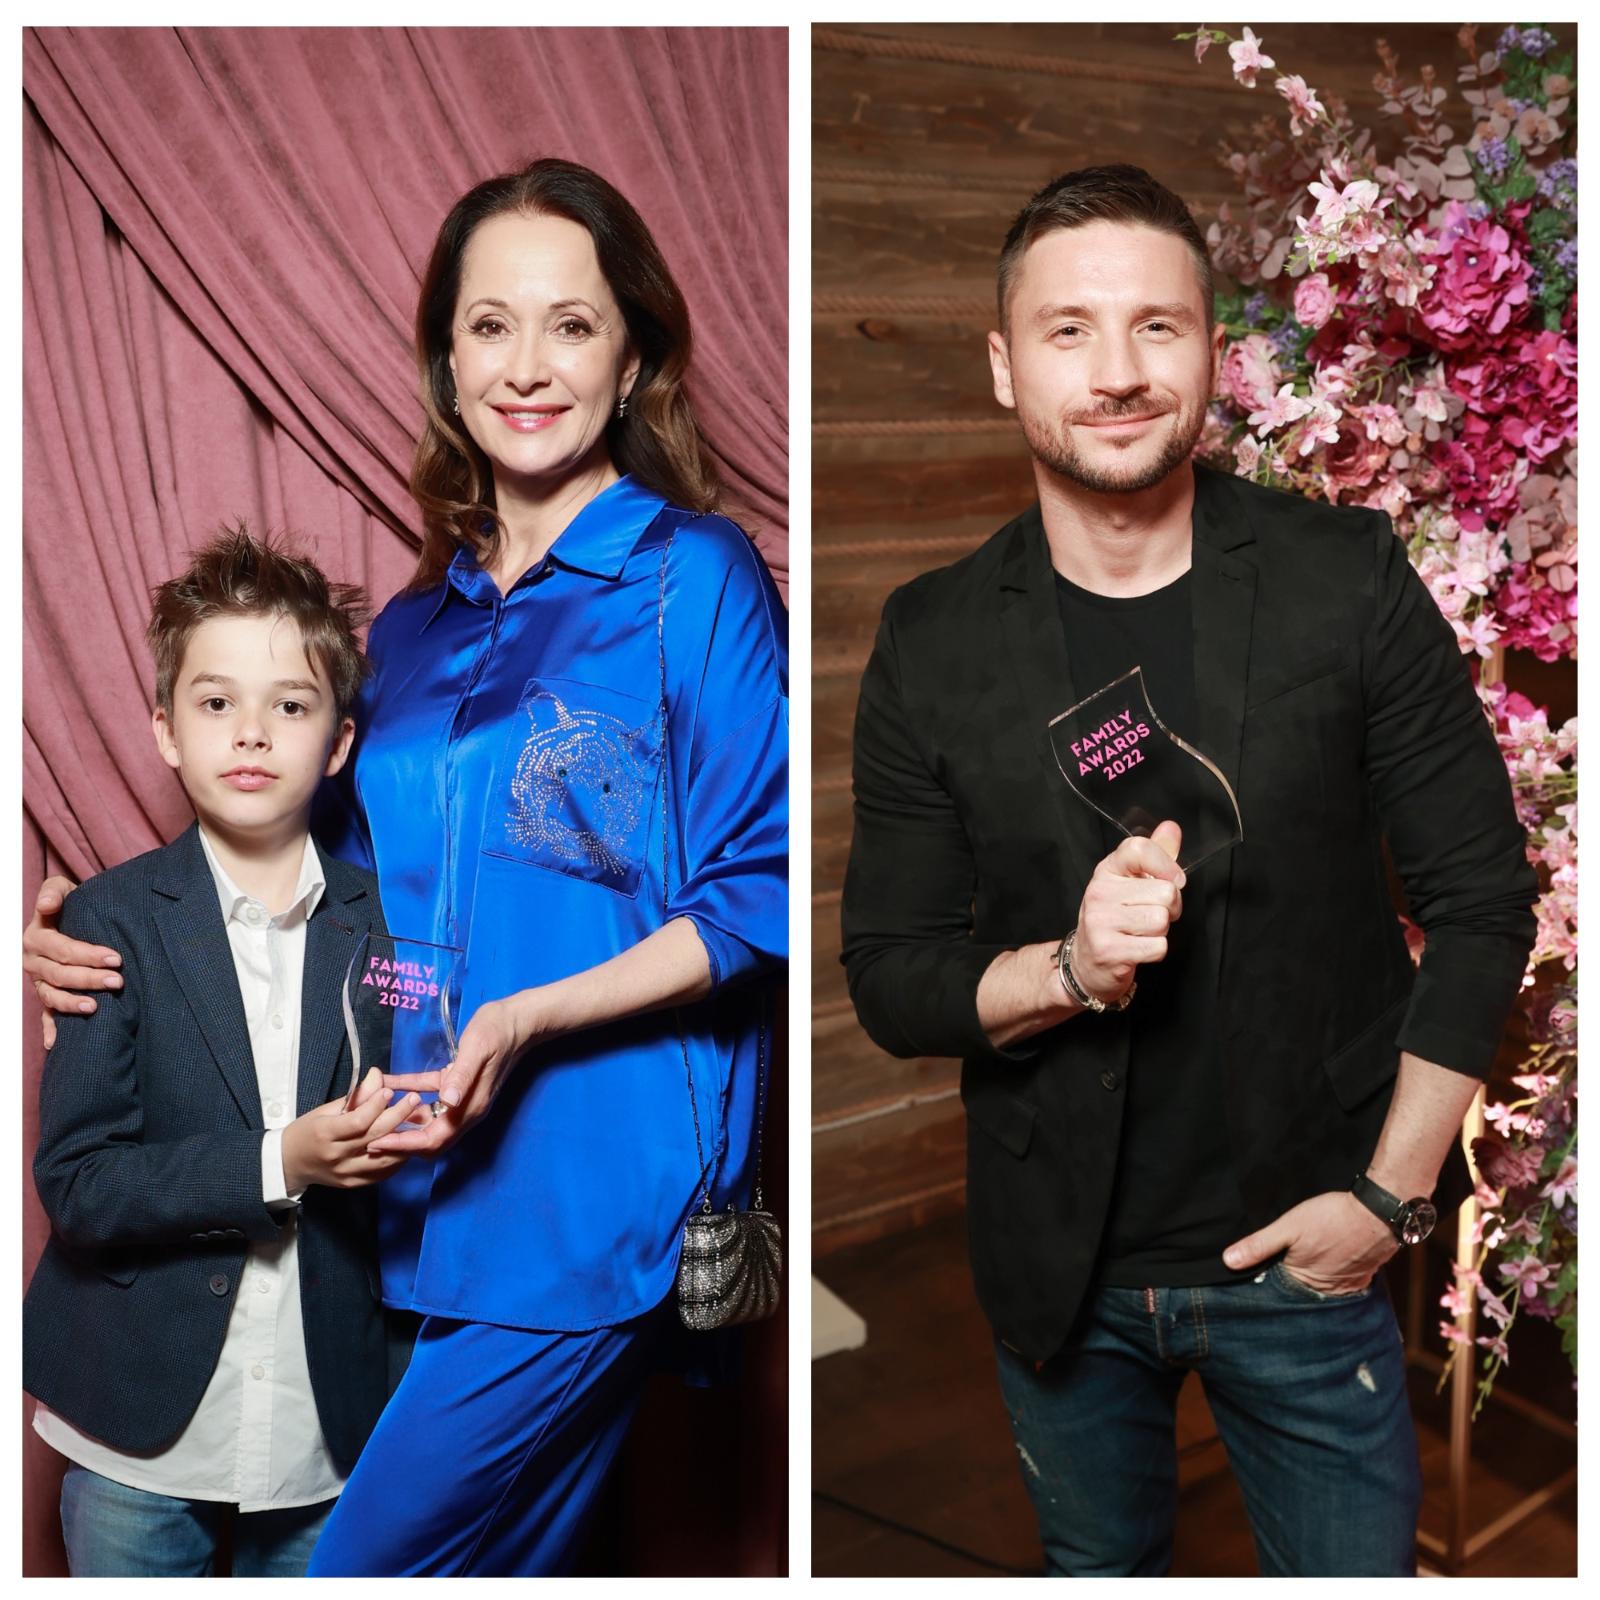 Премия Family Awards 2022 – вручена! Какие звезды были названы лучшими родителями?